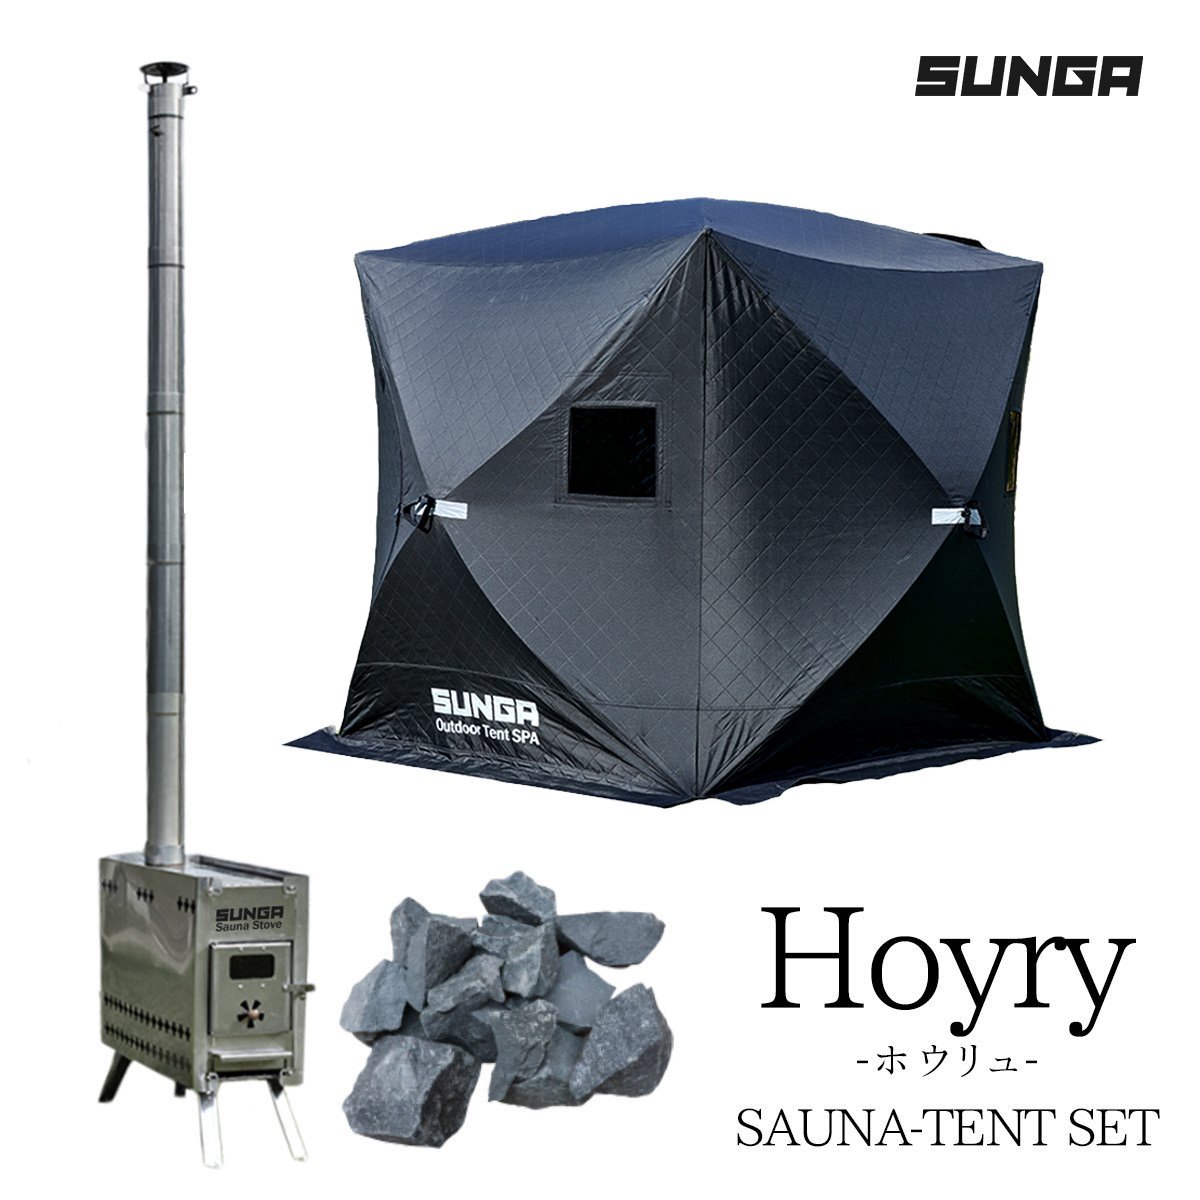 SUNGA Hoyryシリーズ サウナテントブラック サウナストーブ サウナストーン セット ロウリュ サウナ 簡単設営 ポップアップ式 ととのう